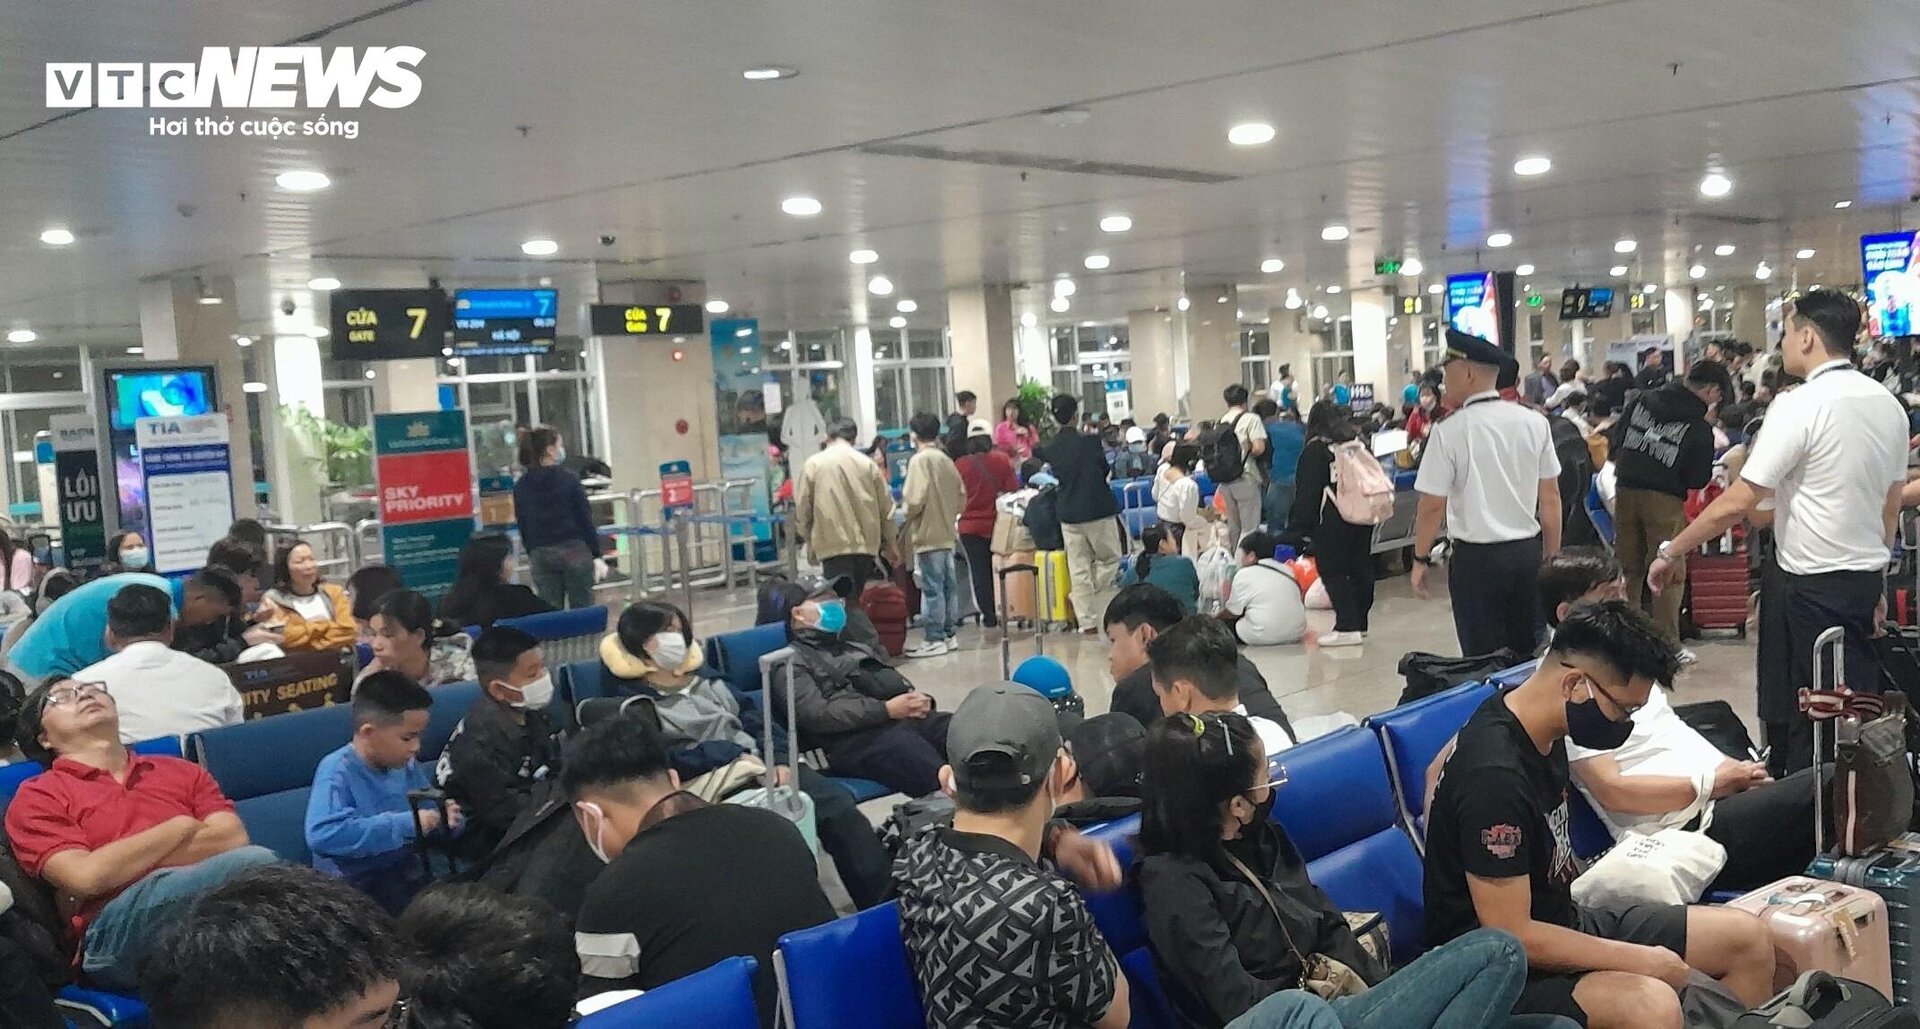 Sân bay Tân Sơn Nhất chật kín người, hành khách mệt mỏi vì chờ đợi - 4